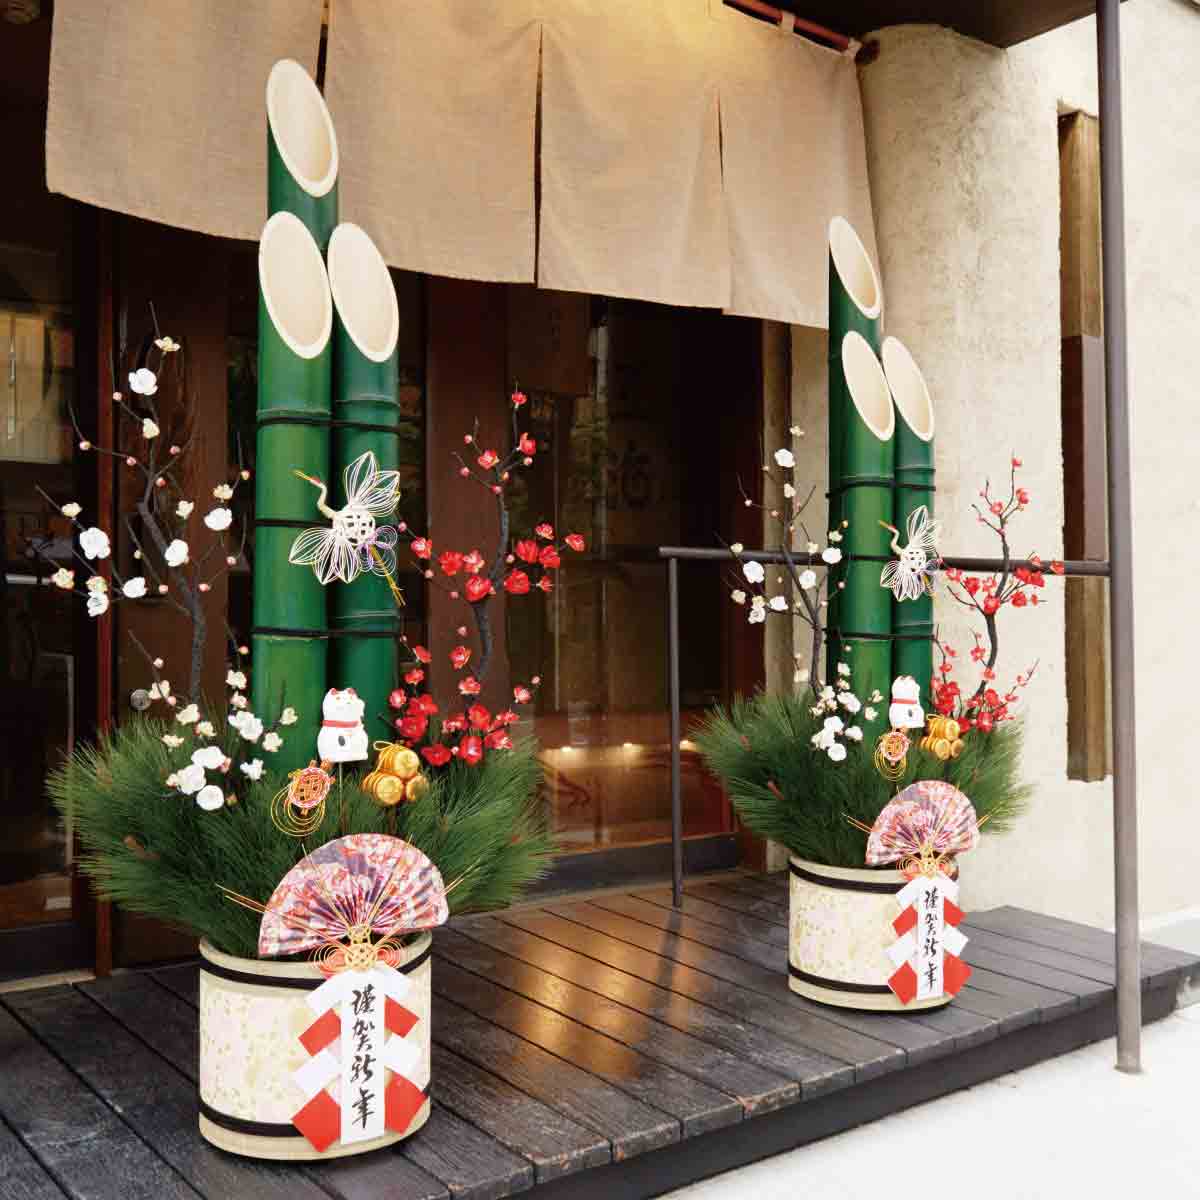 彩生竹門松 【正月飾り 店舗装飾 初売り イベント セール ディスプレイ